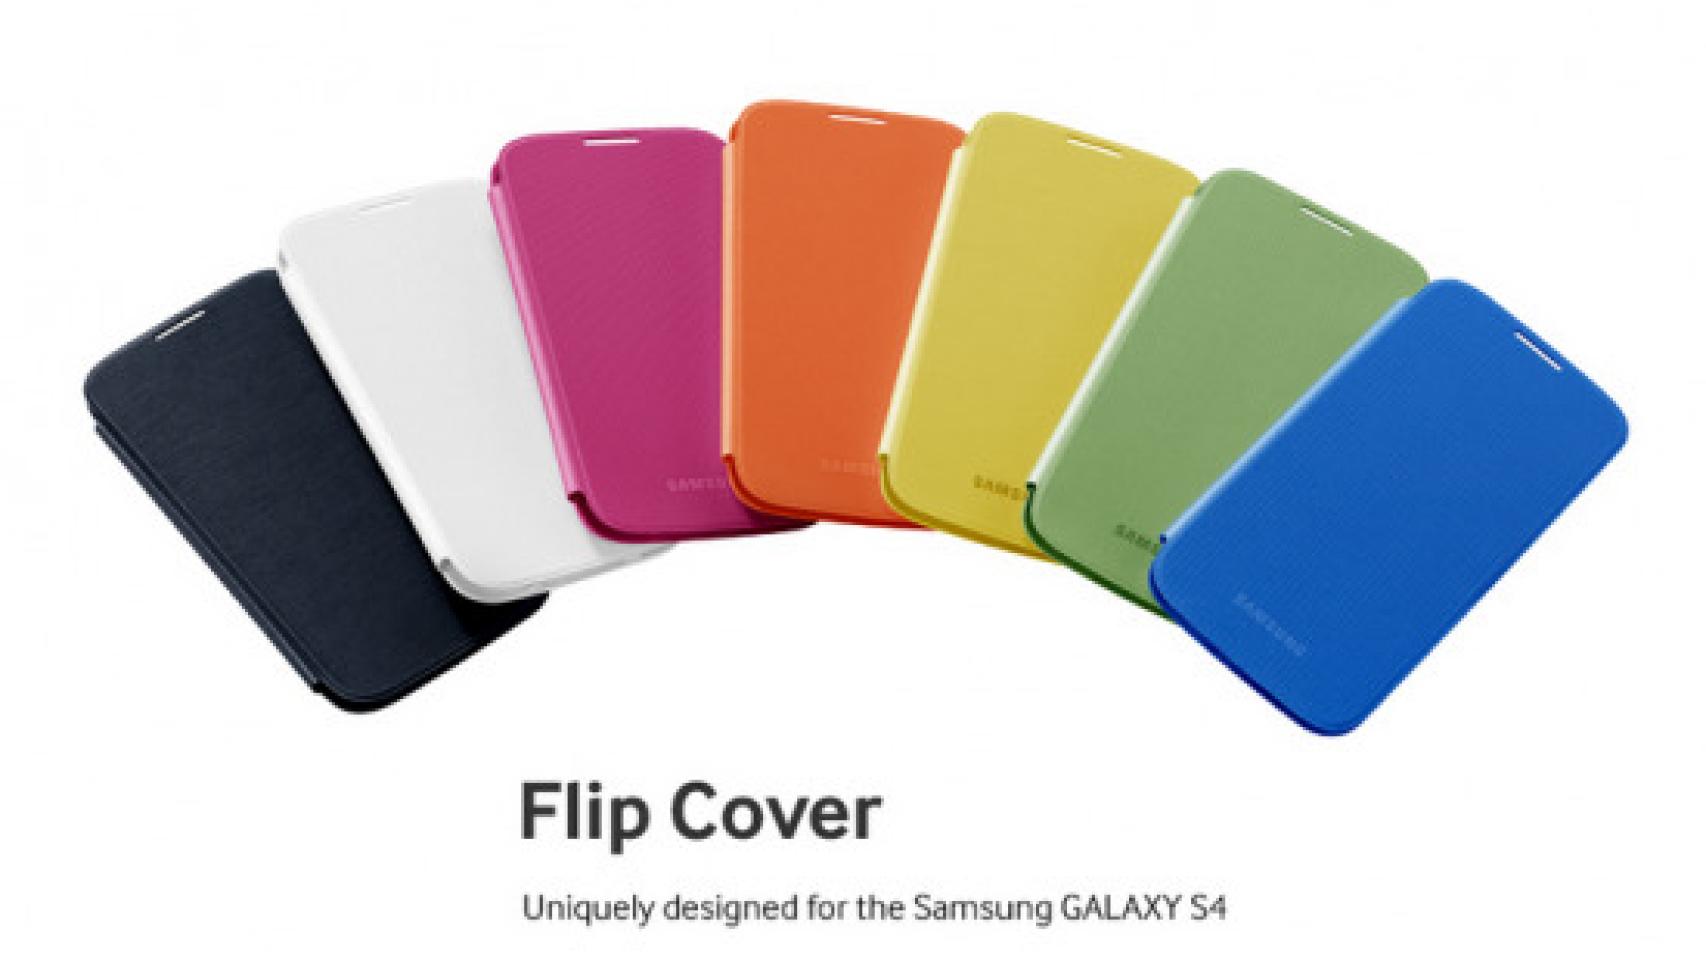 Samsung Galaxy SIV: Precios y fechas de venta de sus accesorios